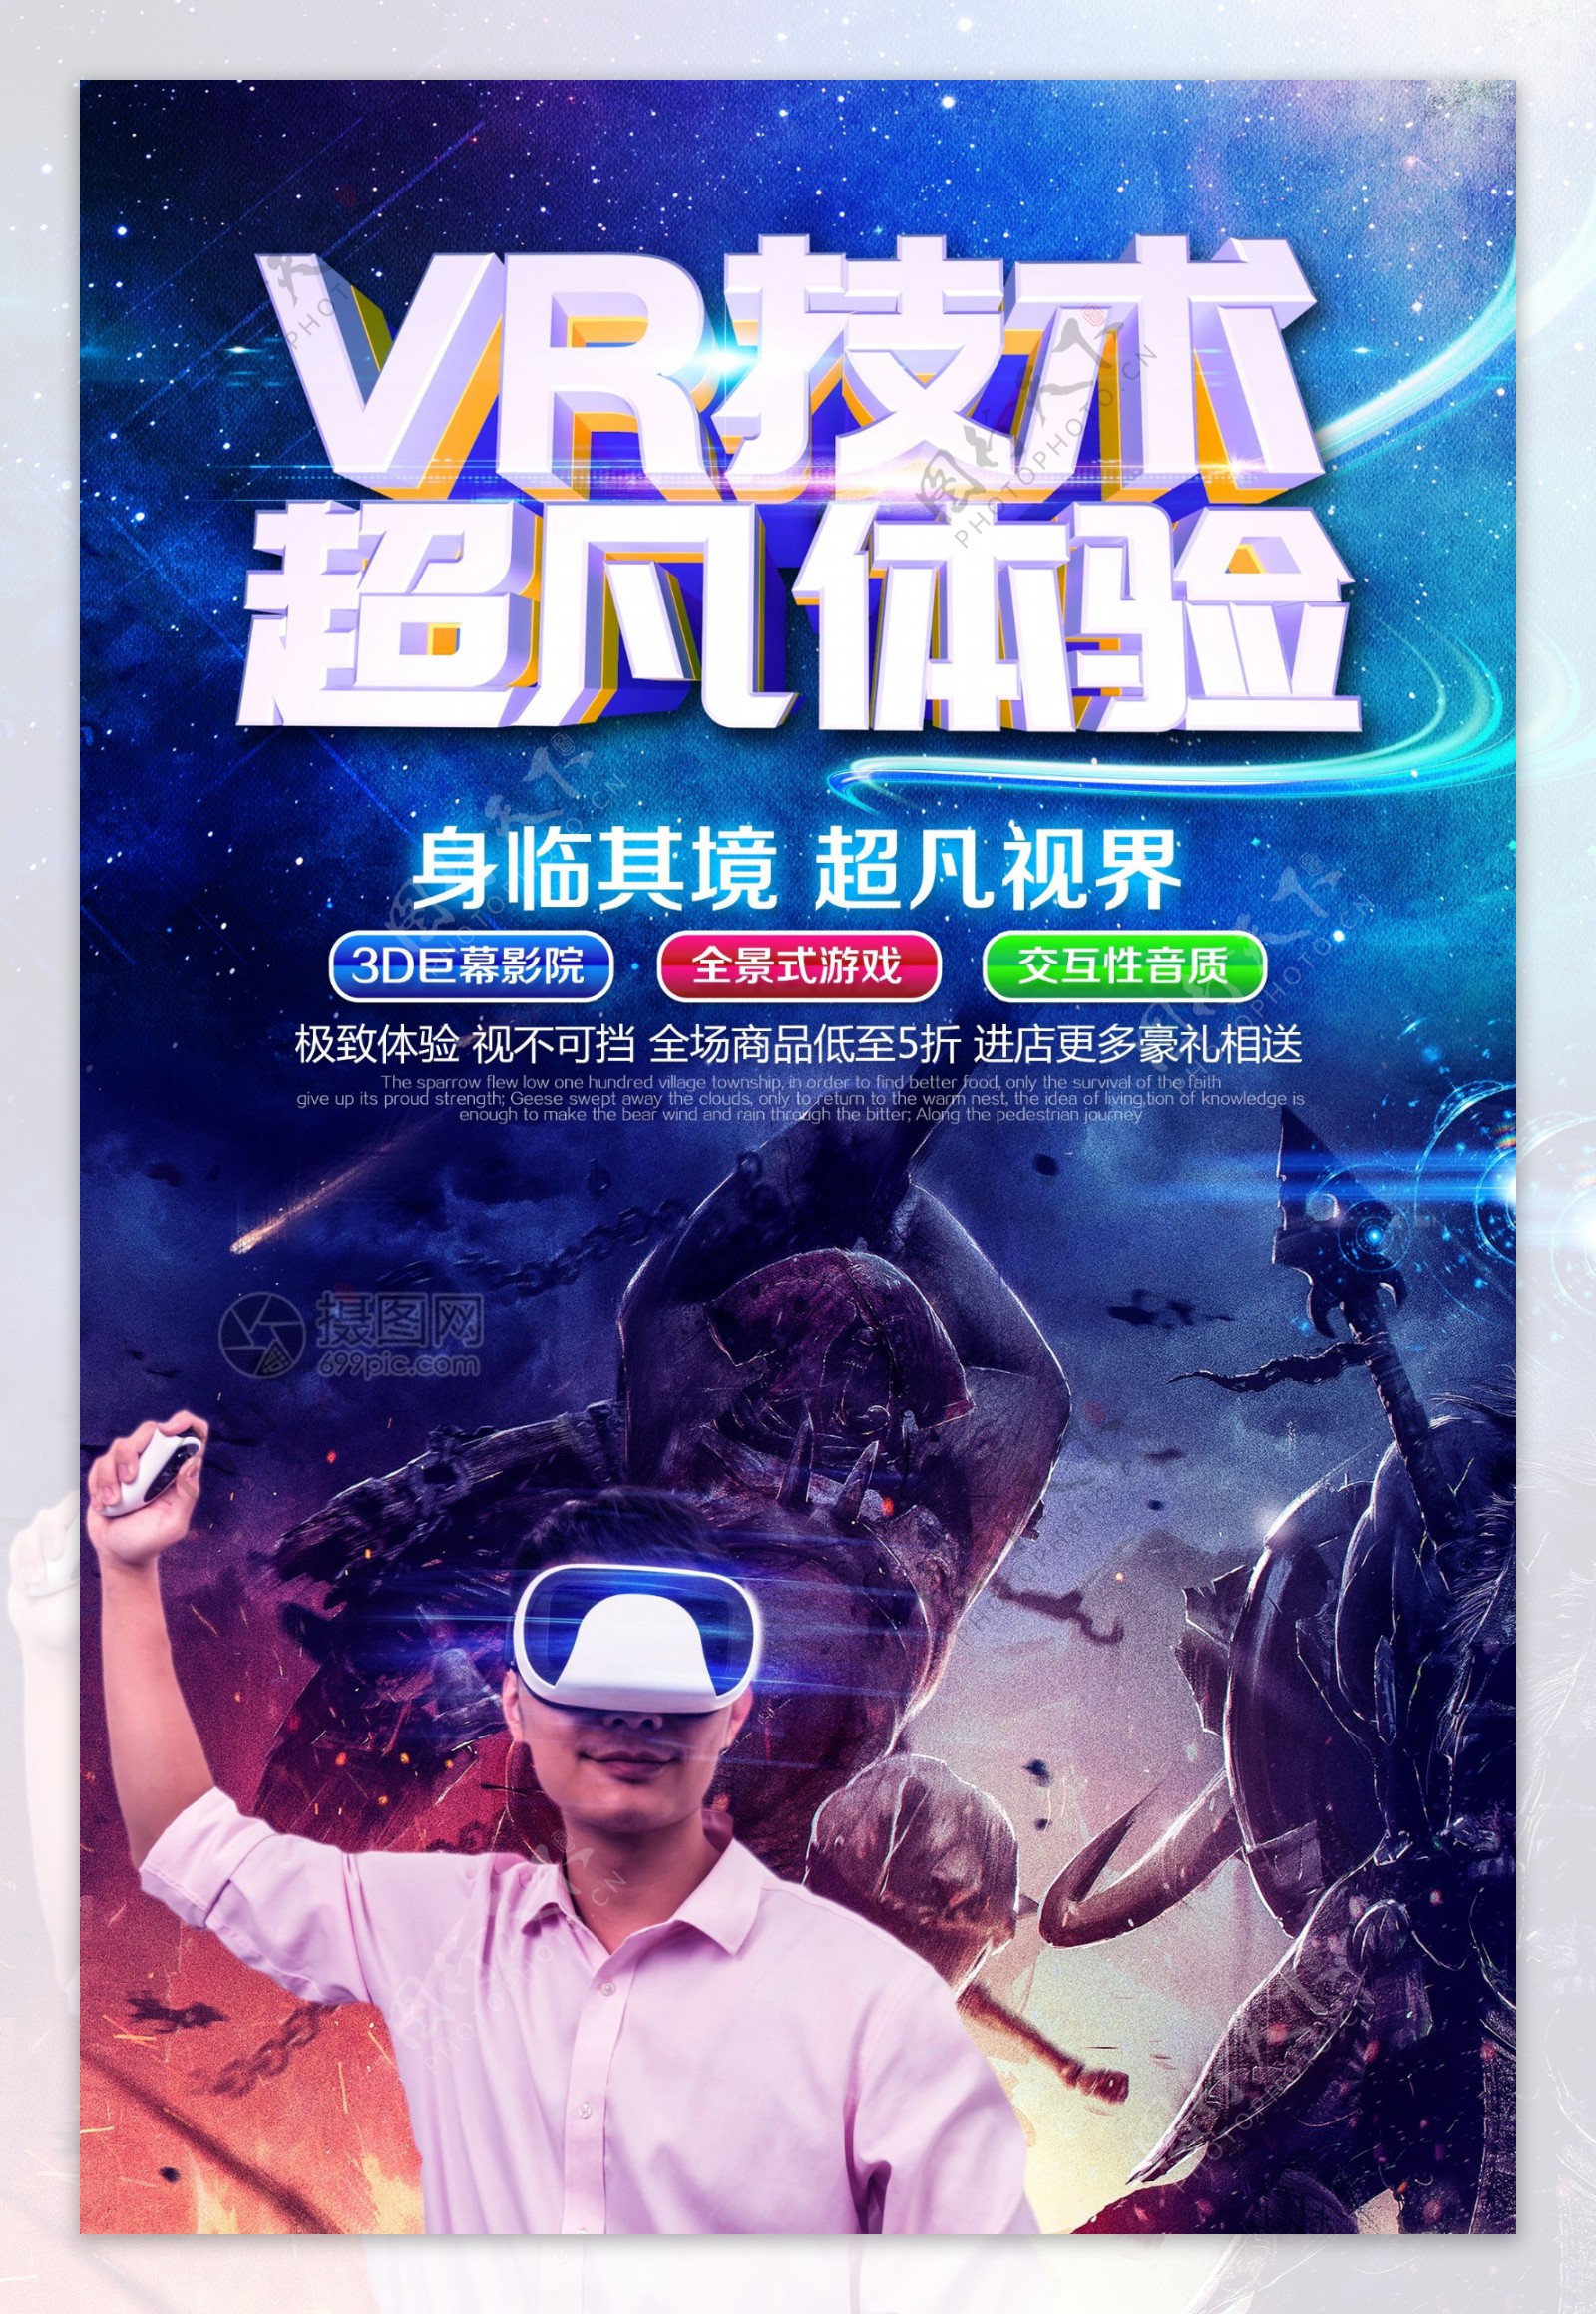 VR技术超凡体验科技海报